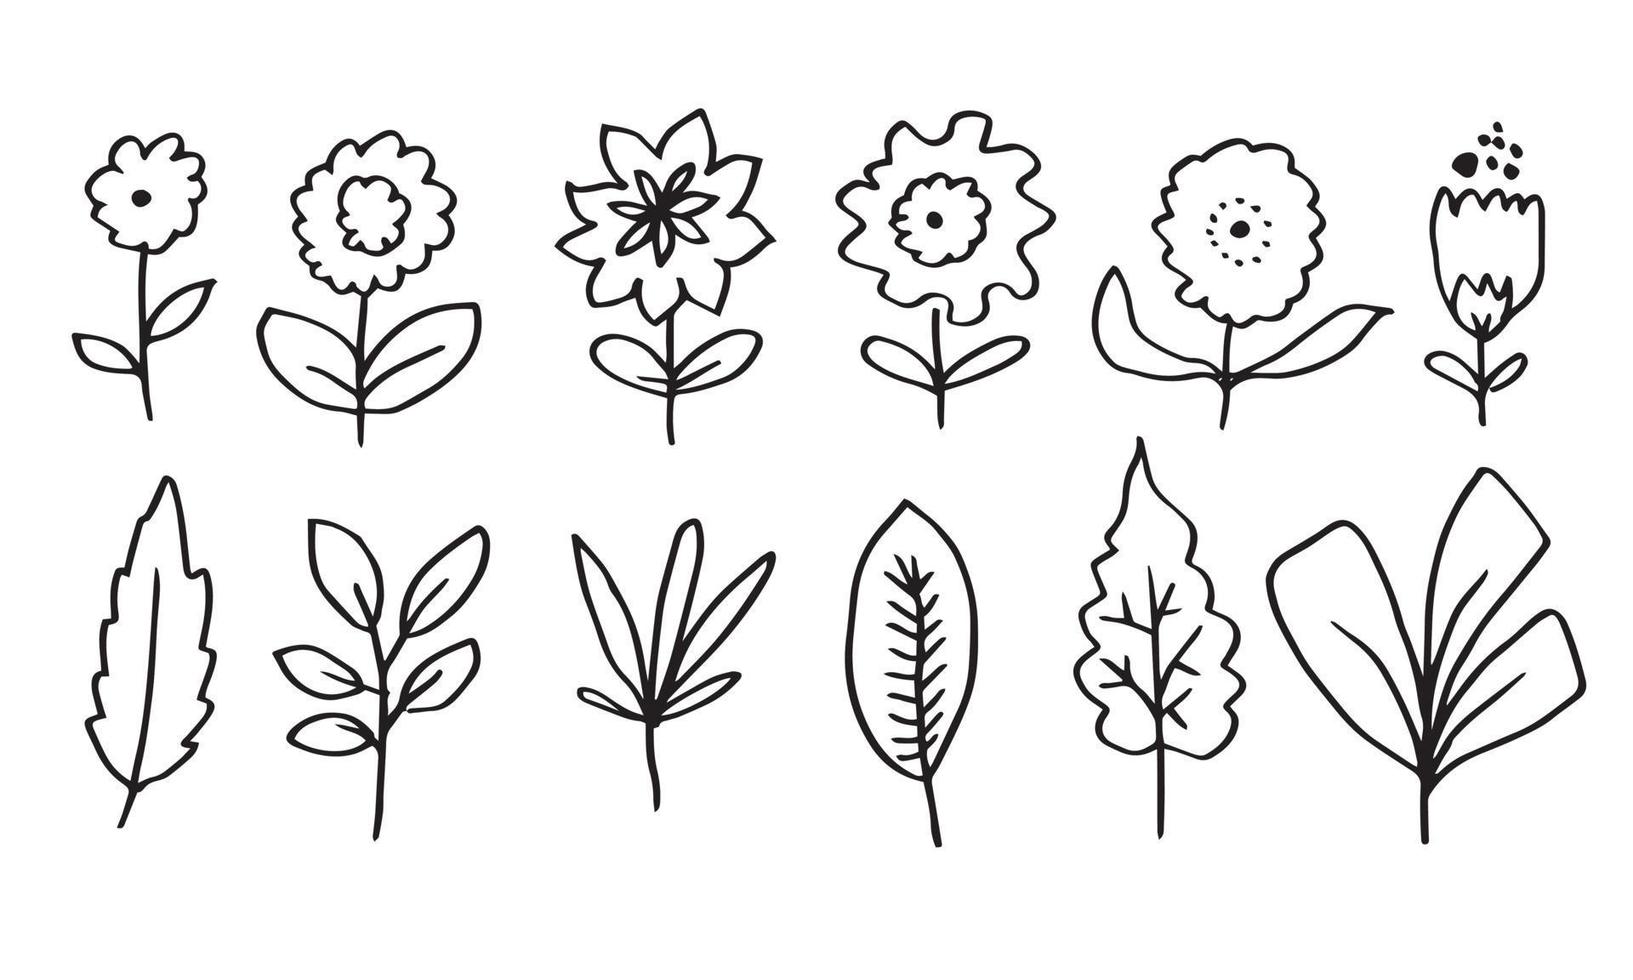 une collection d'images de fleurs dessinées à la main telles que des campanules, des chrysanthèmes, des tournesols, des fleurs de coton et des feuilles tropicales vecteur